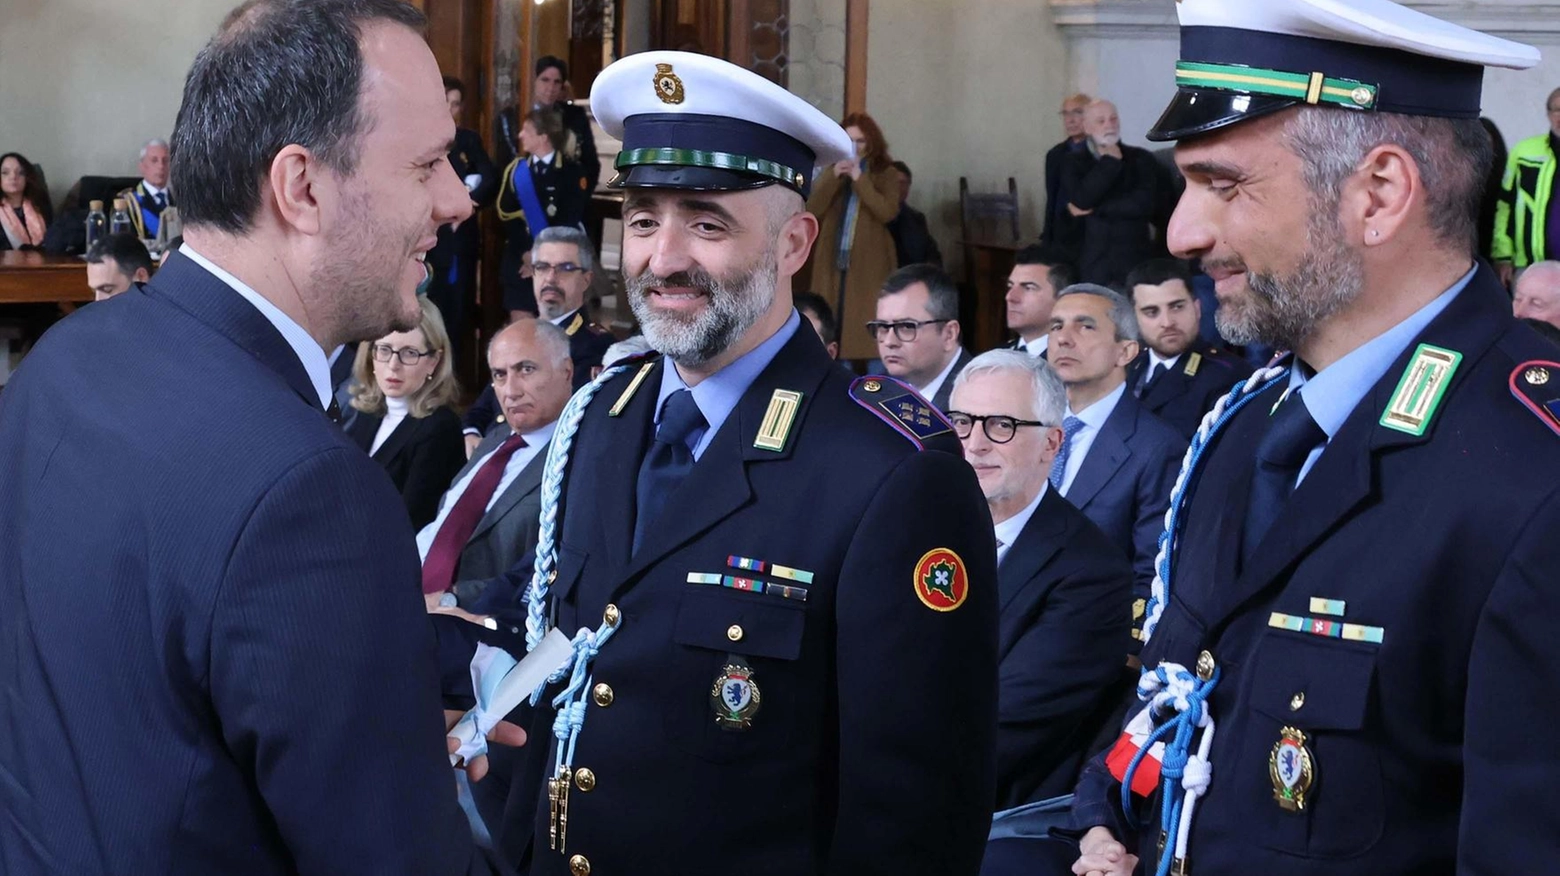 La Polizia locale di Brescia festeggia il 150° anniversario con eventi e dati sulle attività svolte nel 2023, tra cui multe per violazioni stradali e interventi antidroga. Comandante Baffa fa il bilancio.